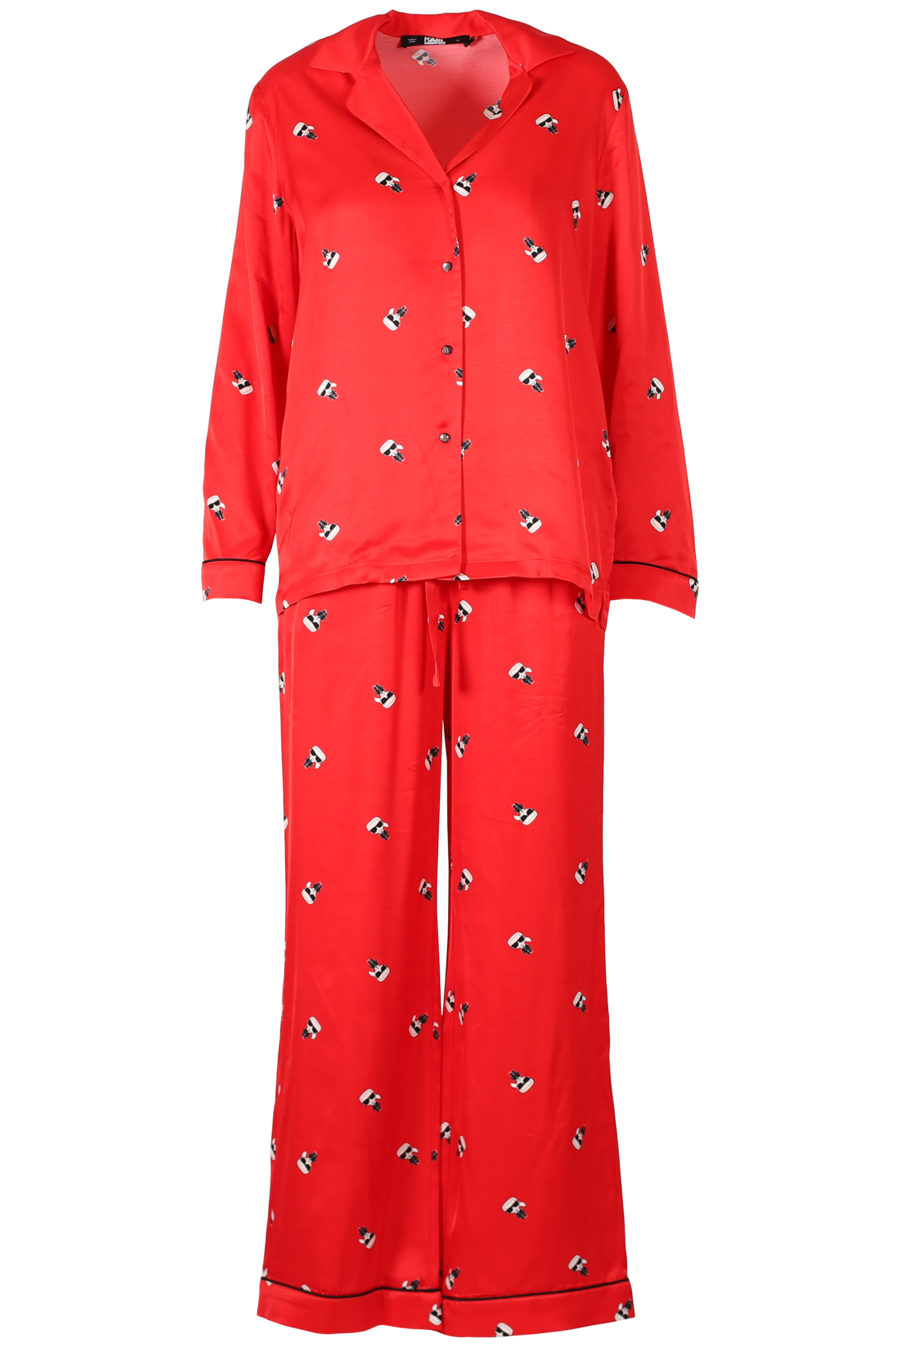 Geschenkset mit rotem Satin-Schlafanzug - IMG 3289